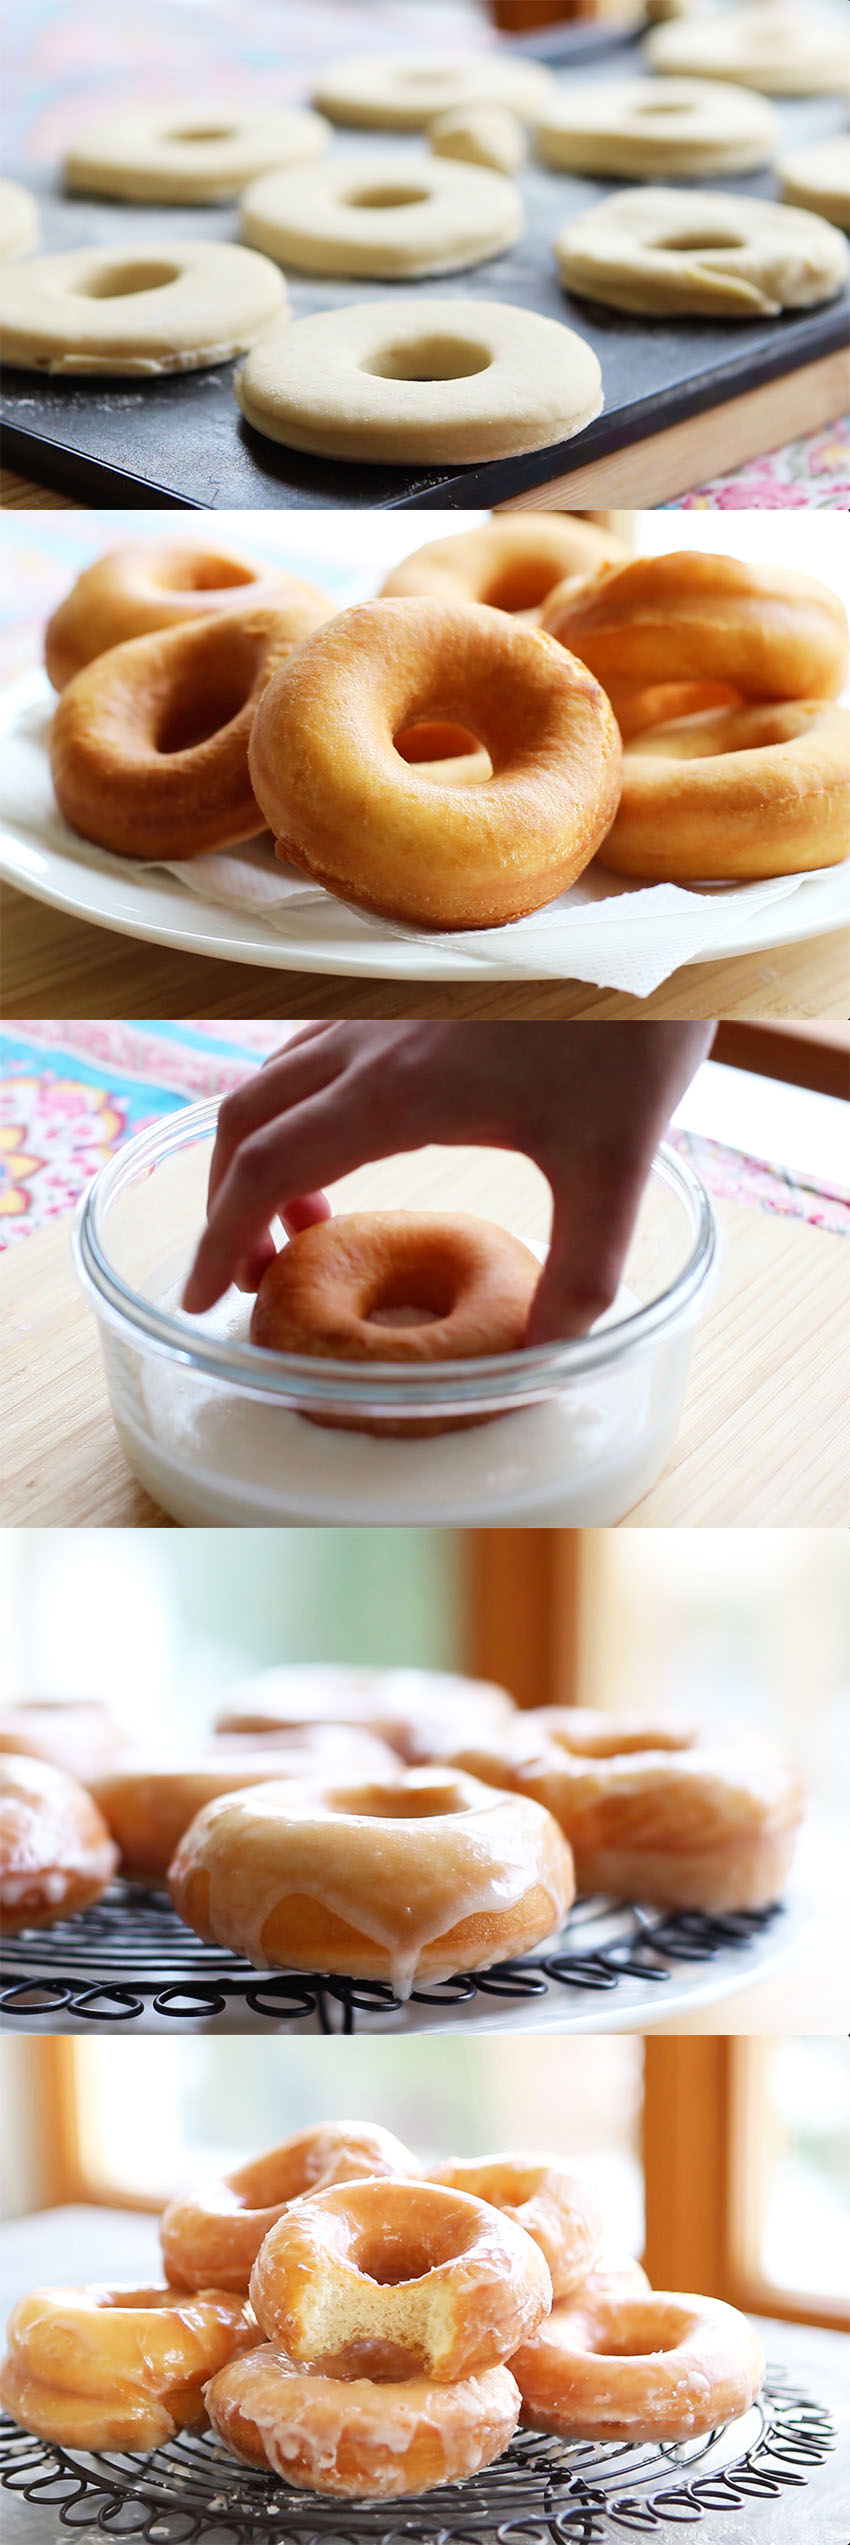 how to make doughnuts